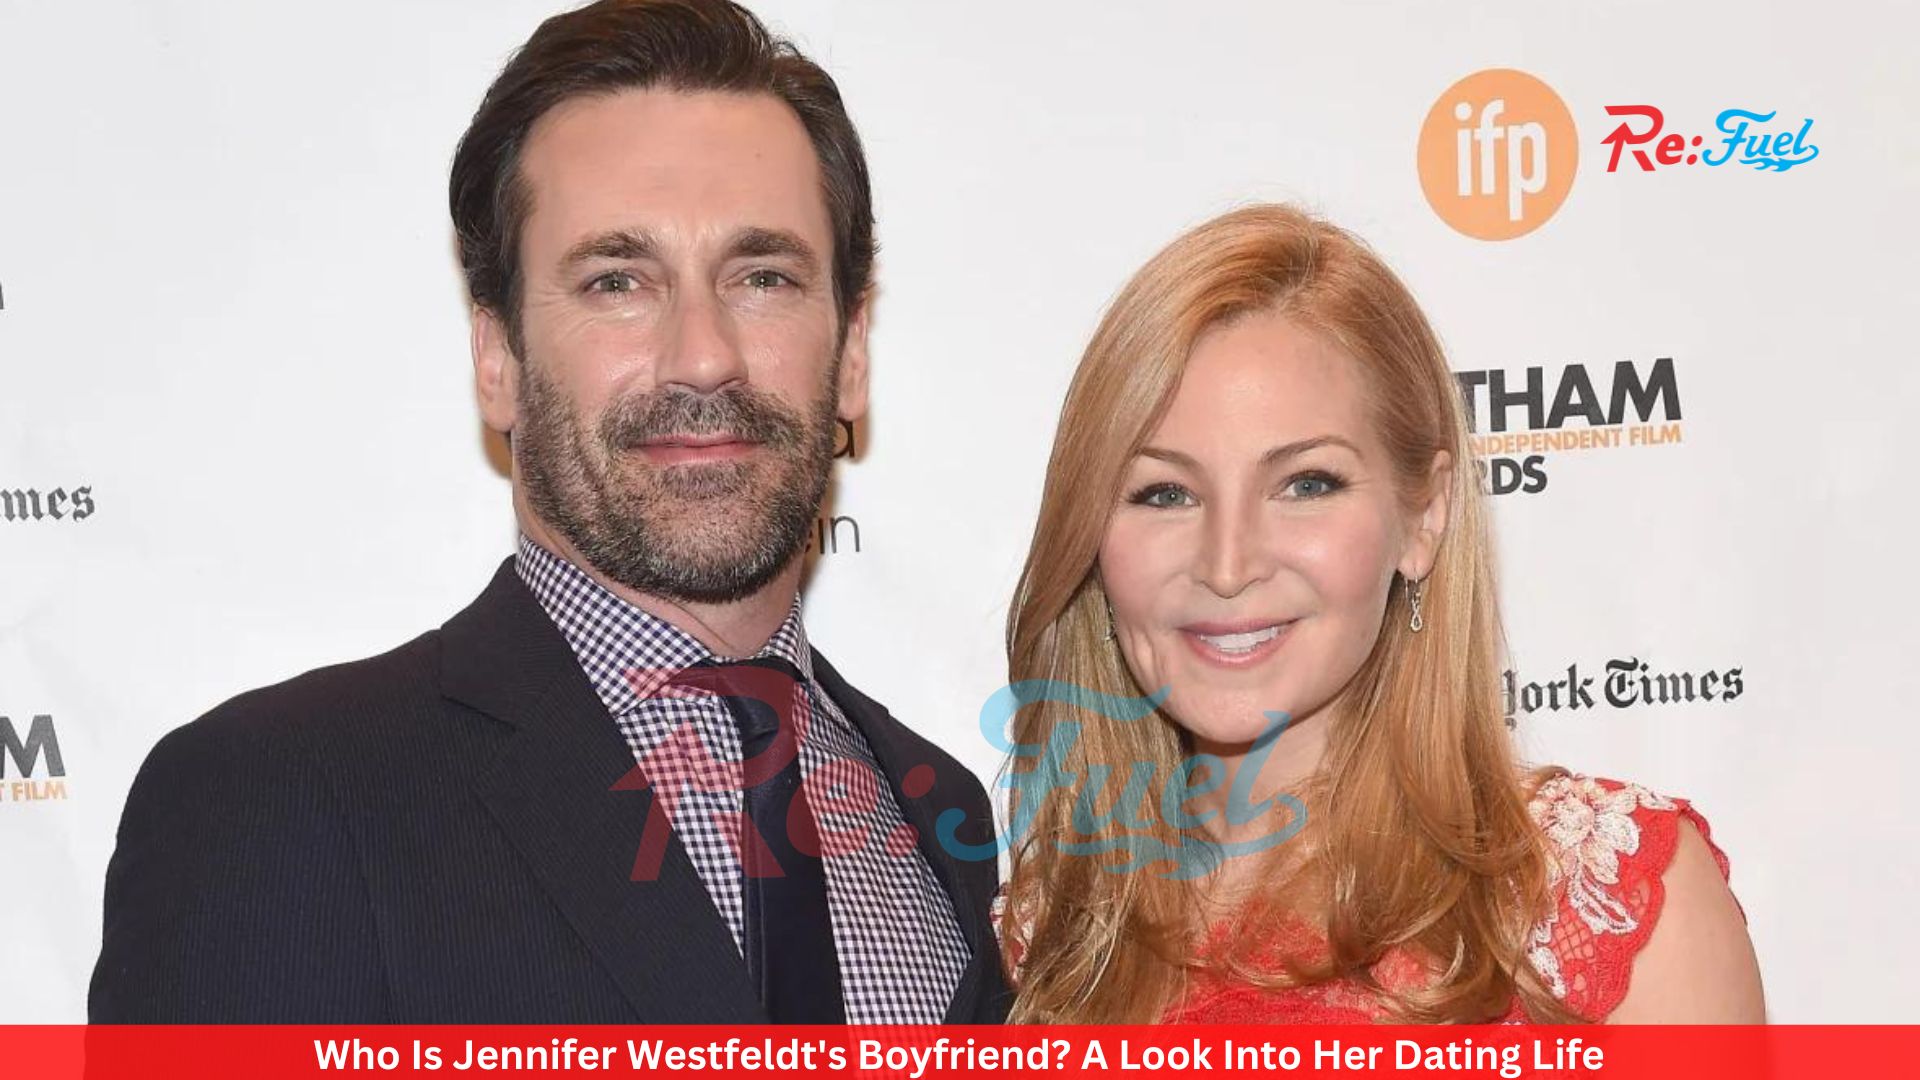 Who Is Jennifer Westfeldt's Boyfriend? A Look Into Her Dating Life